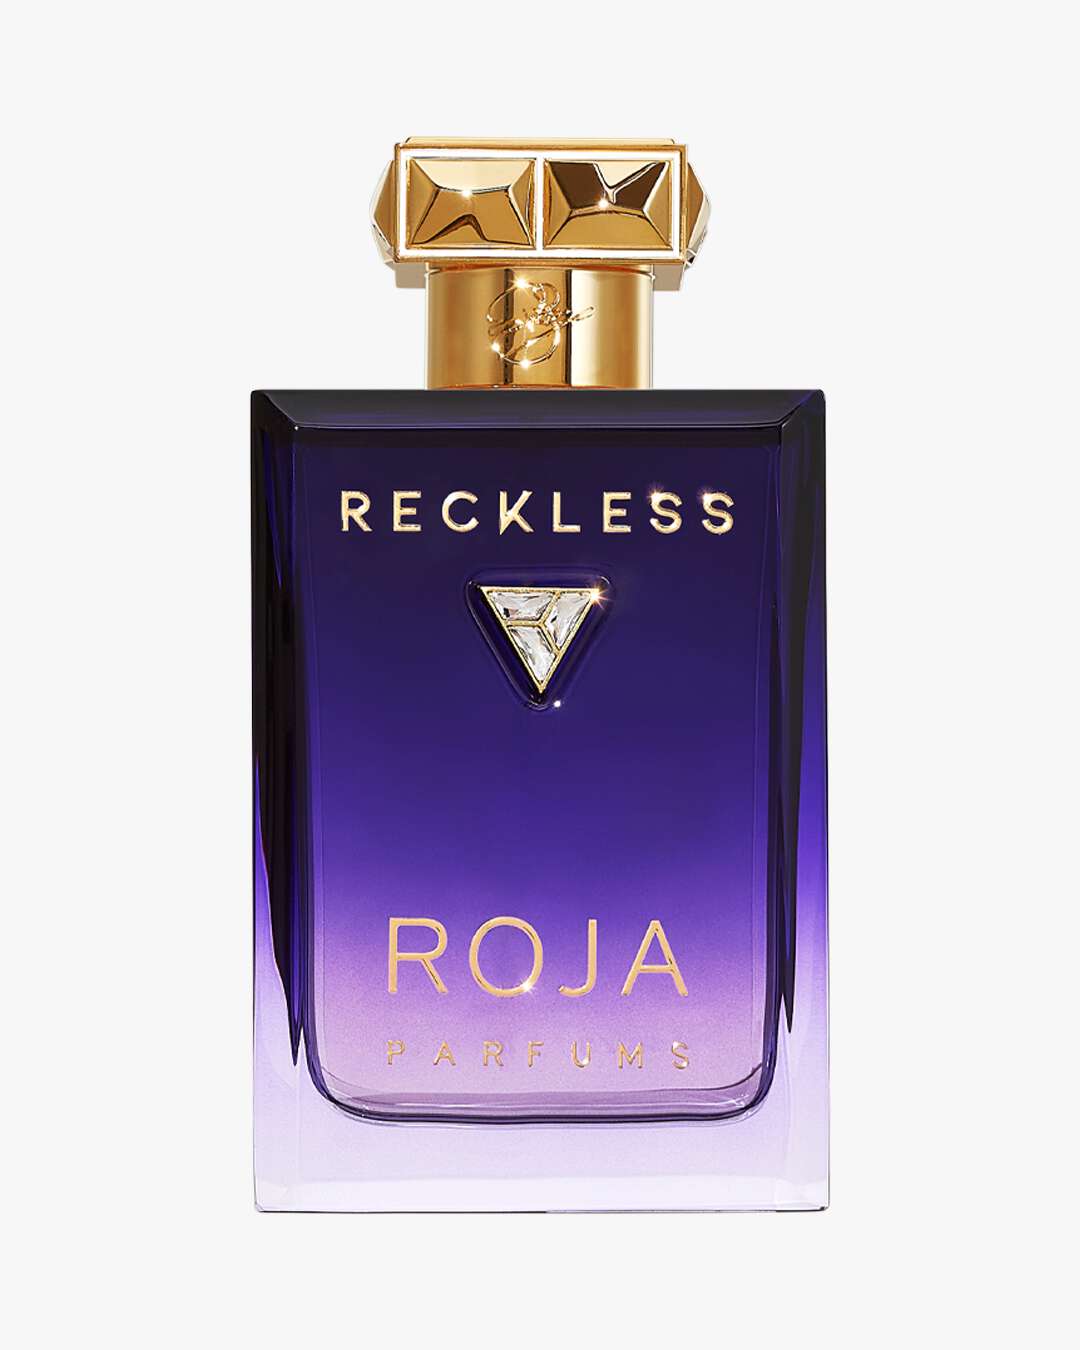 RECKLESS Essence de Parfum 100 ml